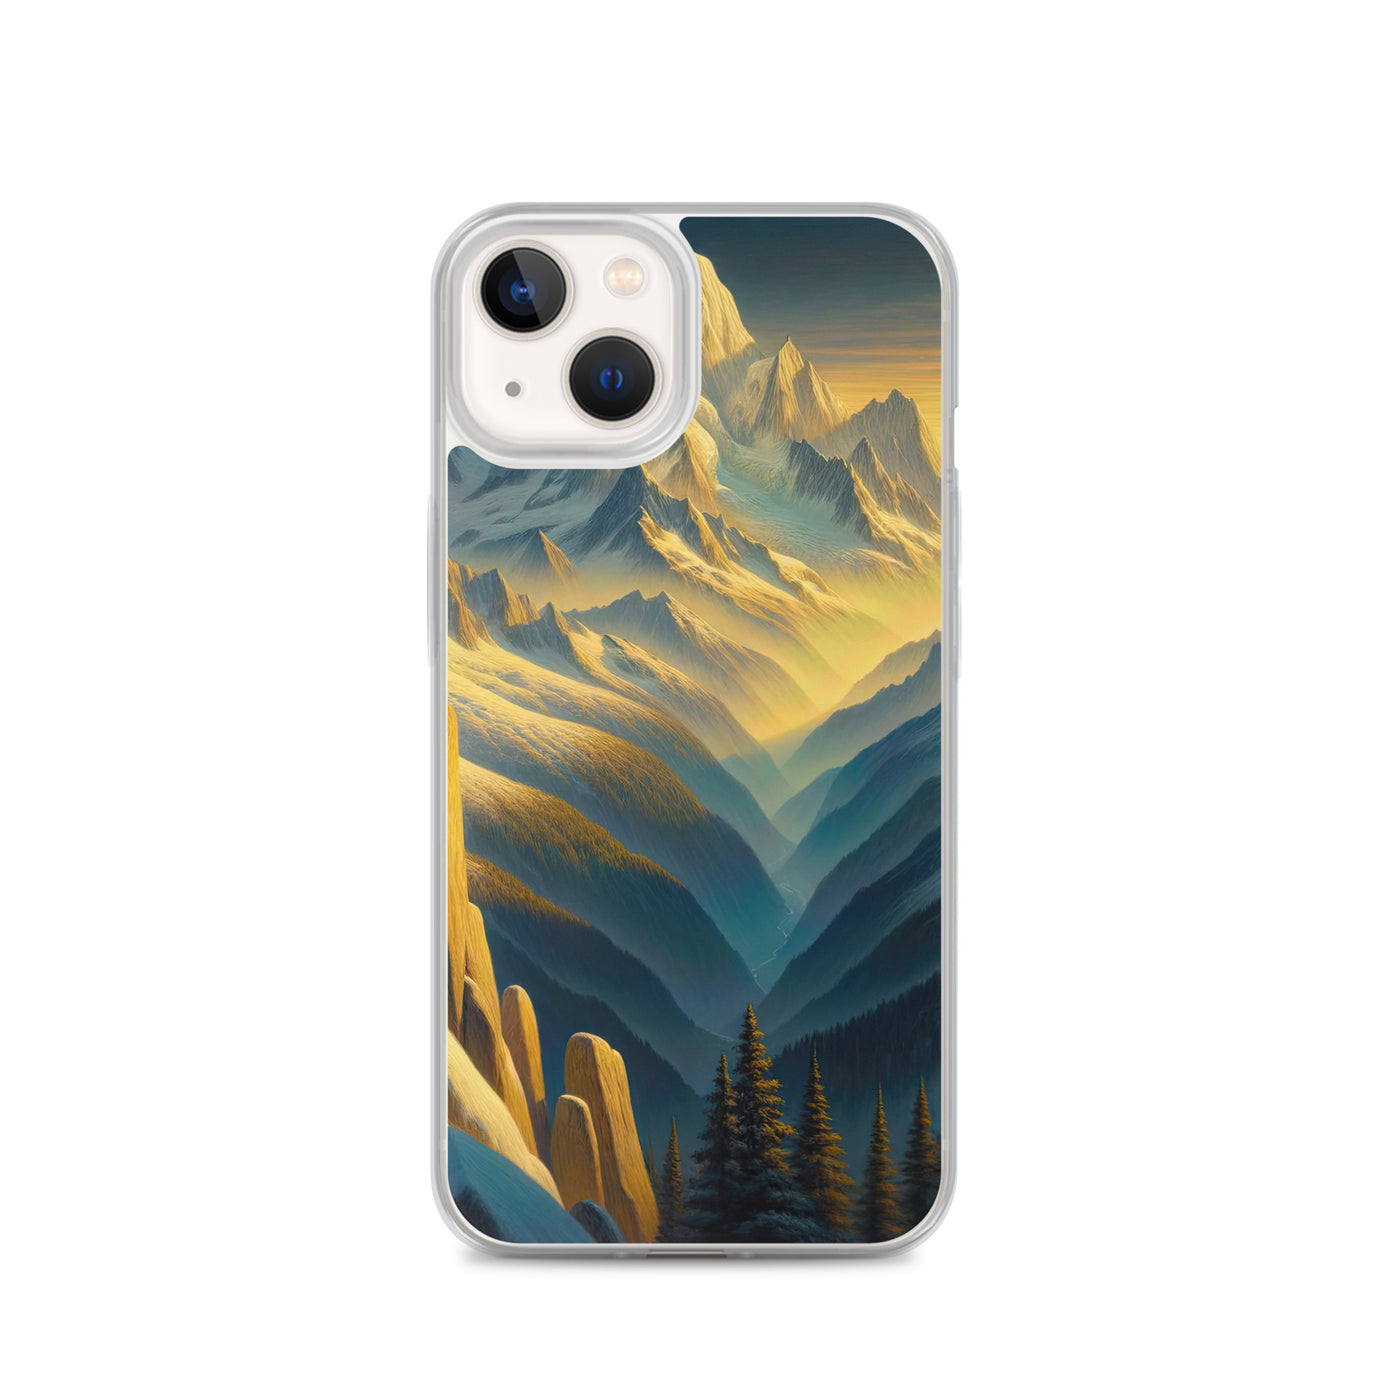 Ölgemälde eines Wanderers bei Morgendämmerung auf Alpengipfeln mit goldenem Sonnenlicht - iPhone Schutzhülle (durchsichtig) wandern xxx yyy zzz iPhone 13